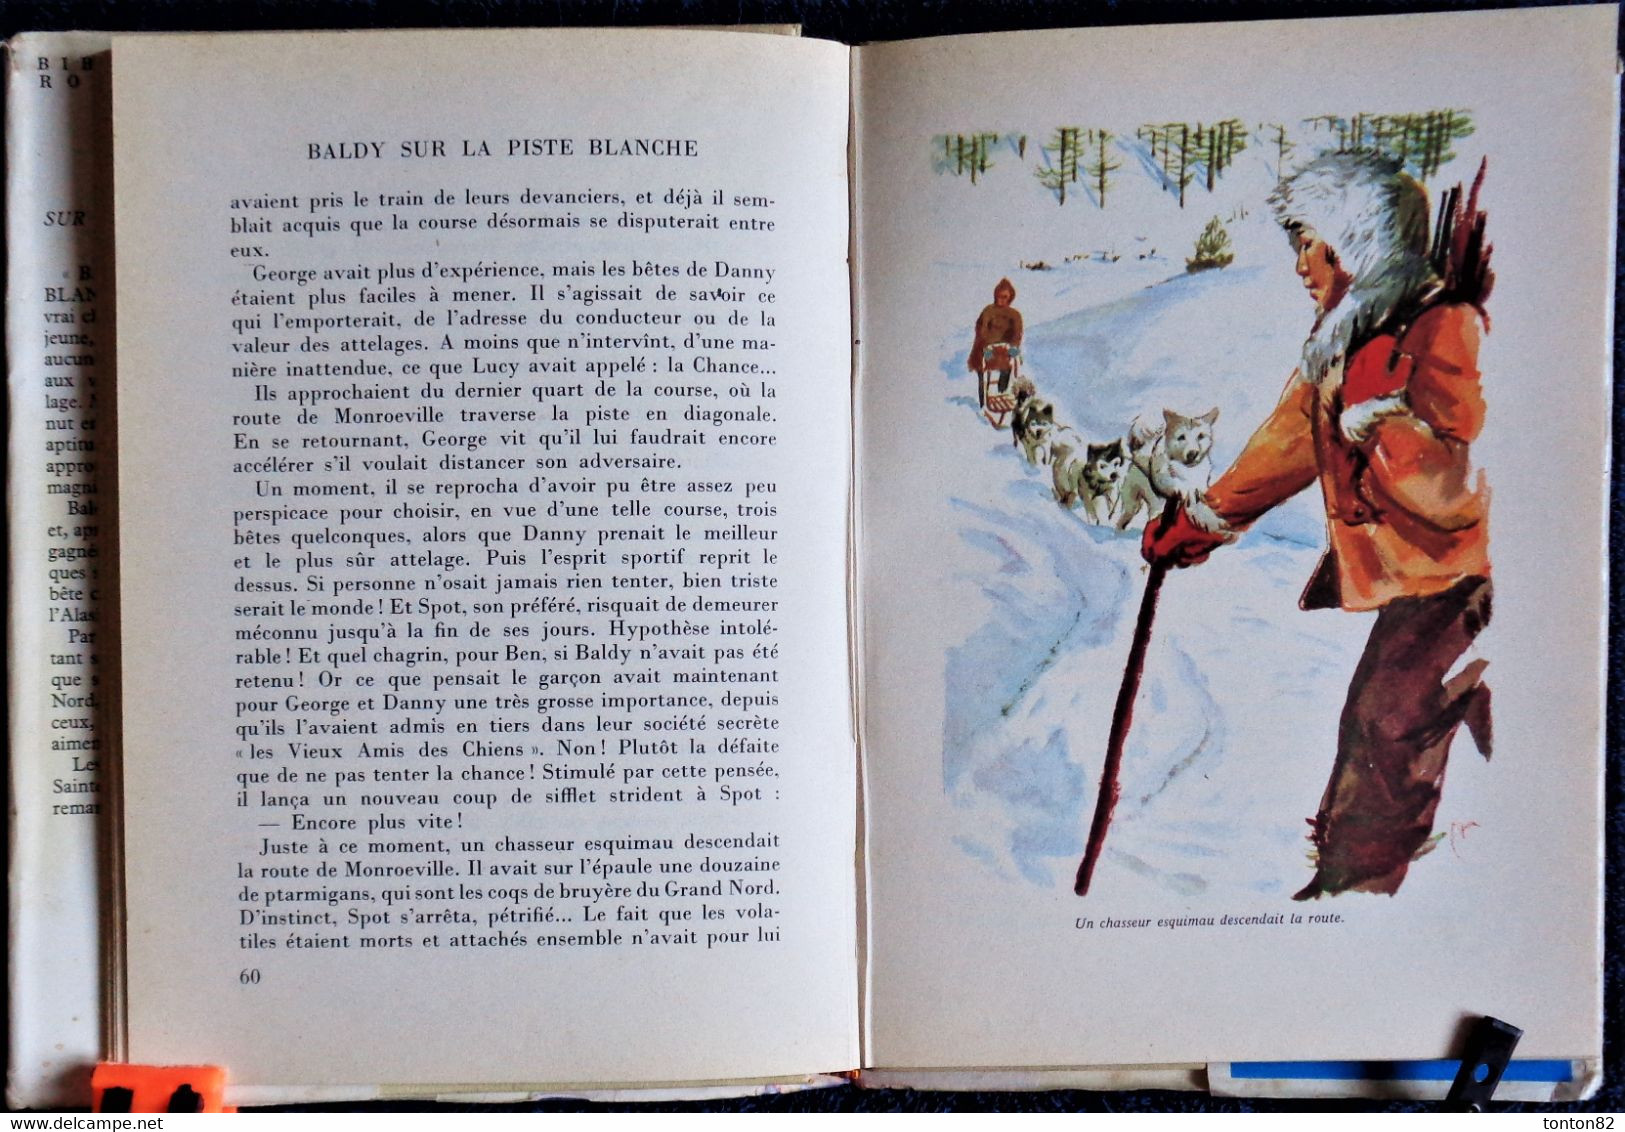 E. Birdsall  Darling - BALDY Sur La Piste Blanche - Rouge Et Or Souveraine - ( 1958 ) . - Bibliotheque Rouge Et Or